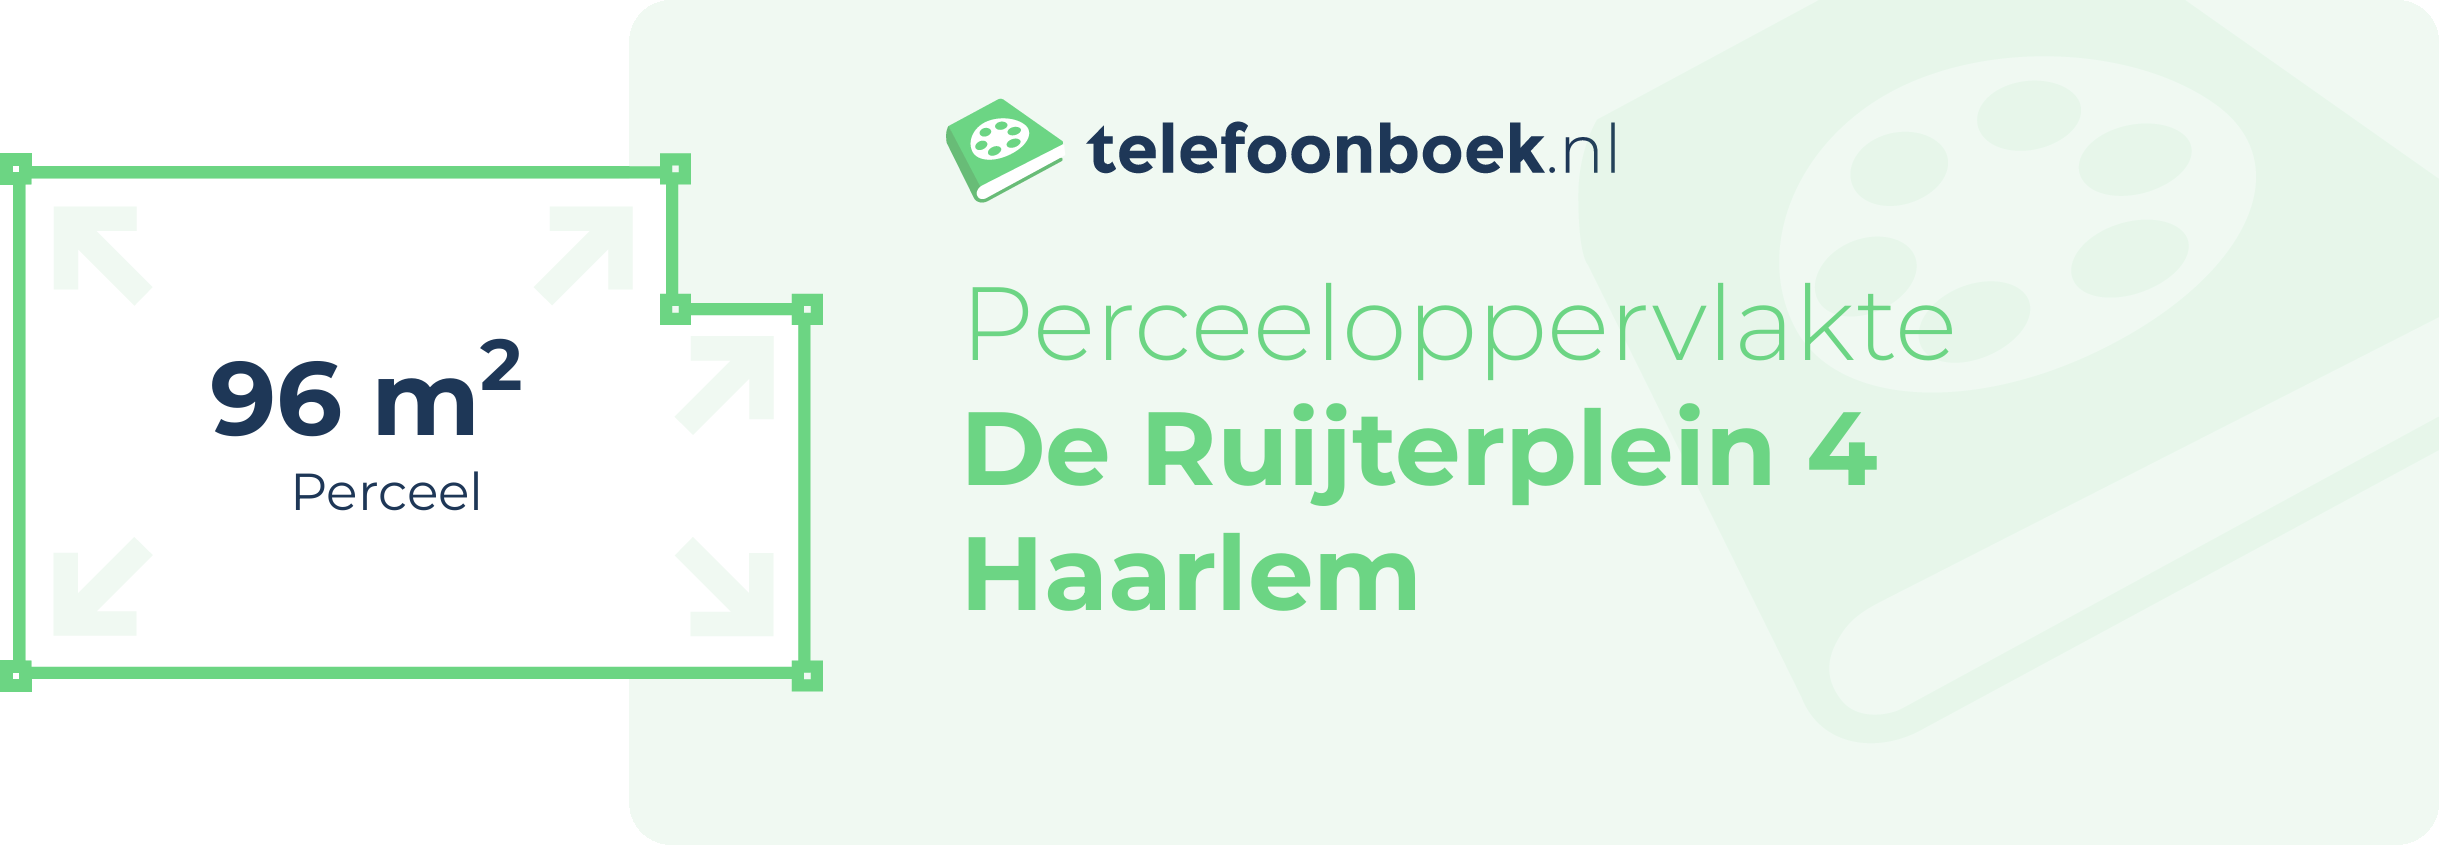 Perceeloppervlakte De Ruijterplein 4 Haarlem